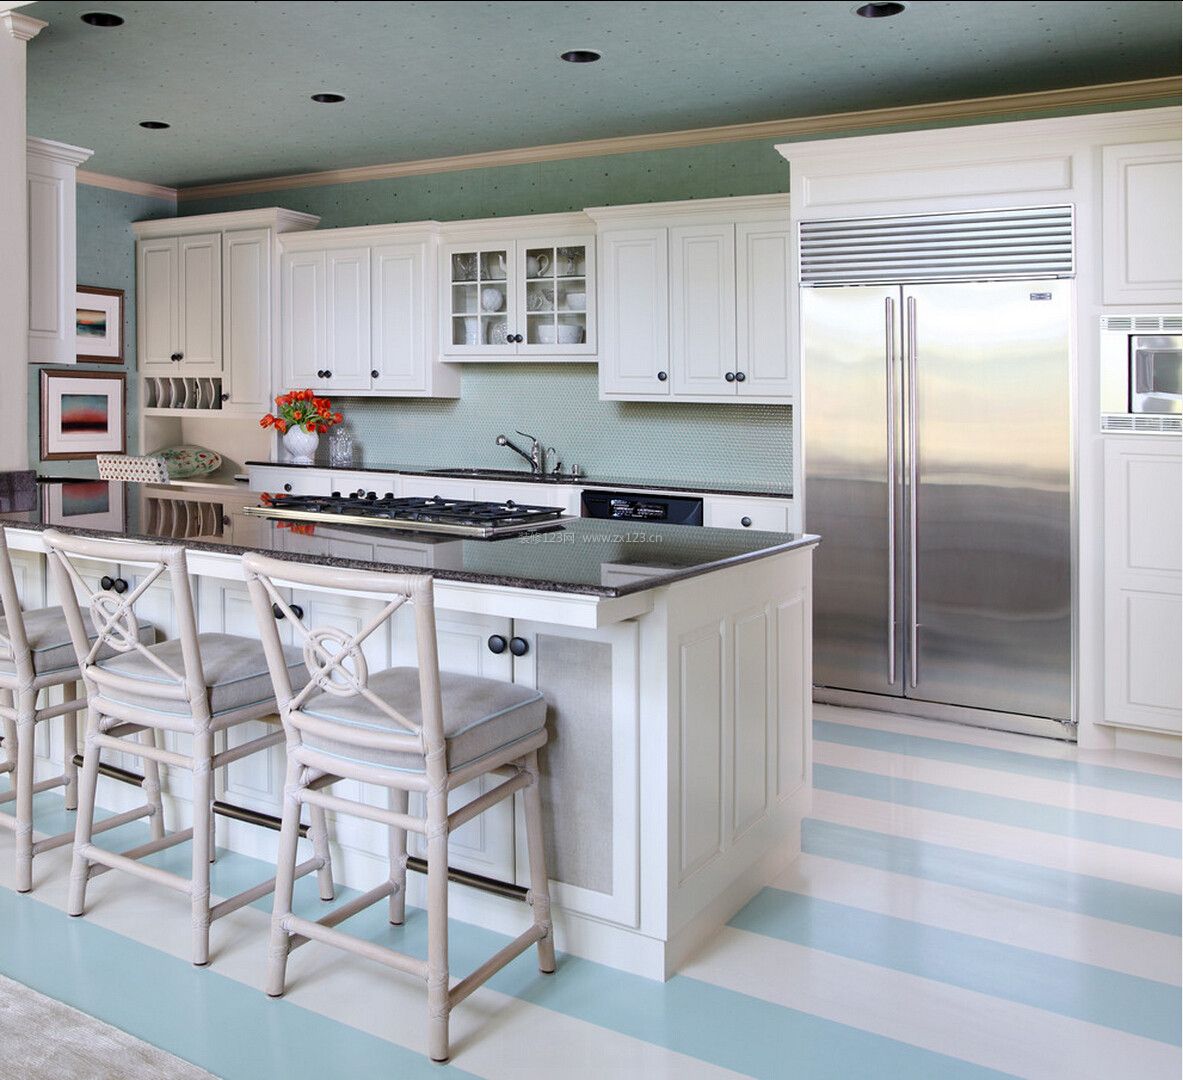 小户型开放式厨房吧台设计装修效果图片